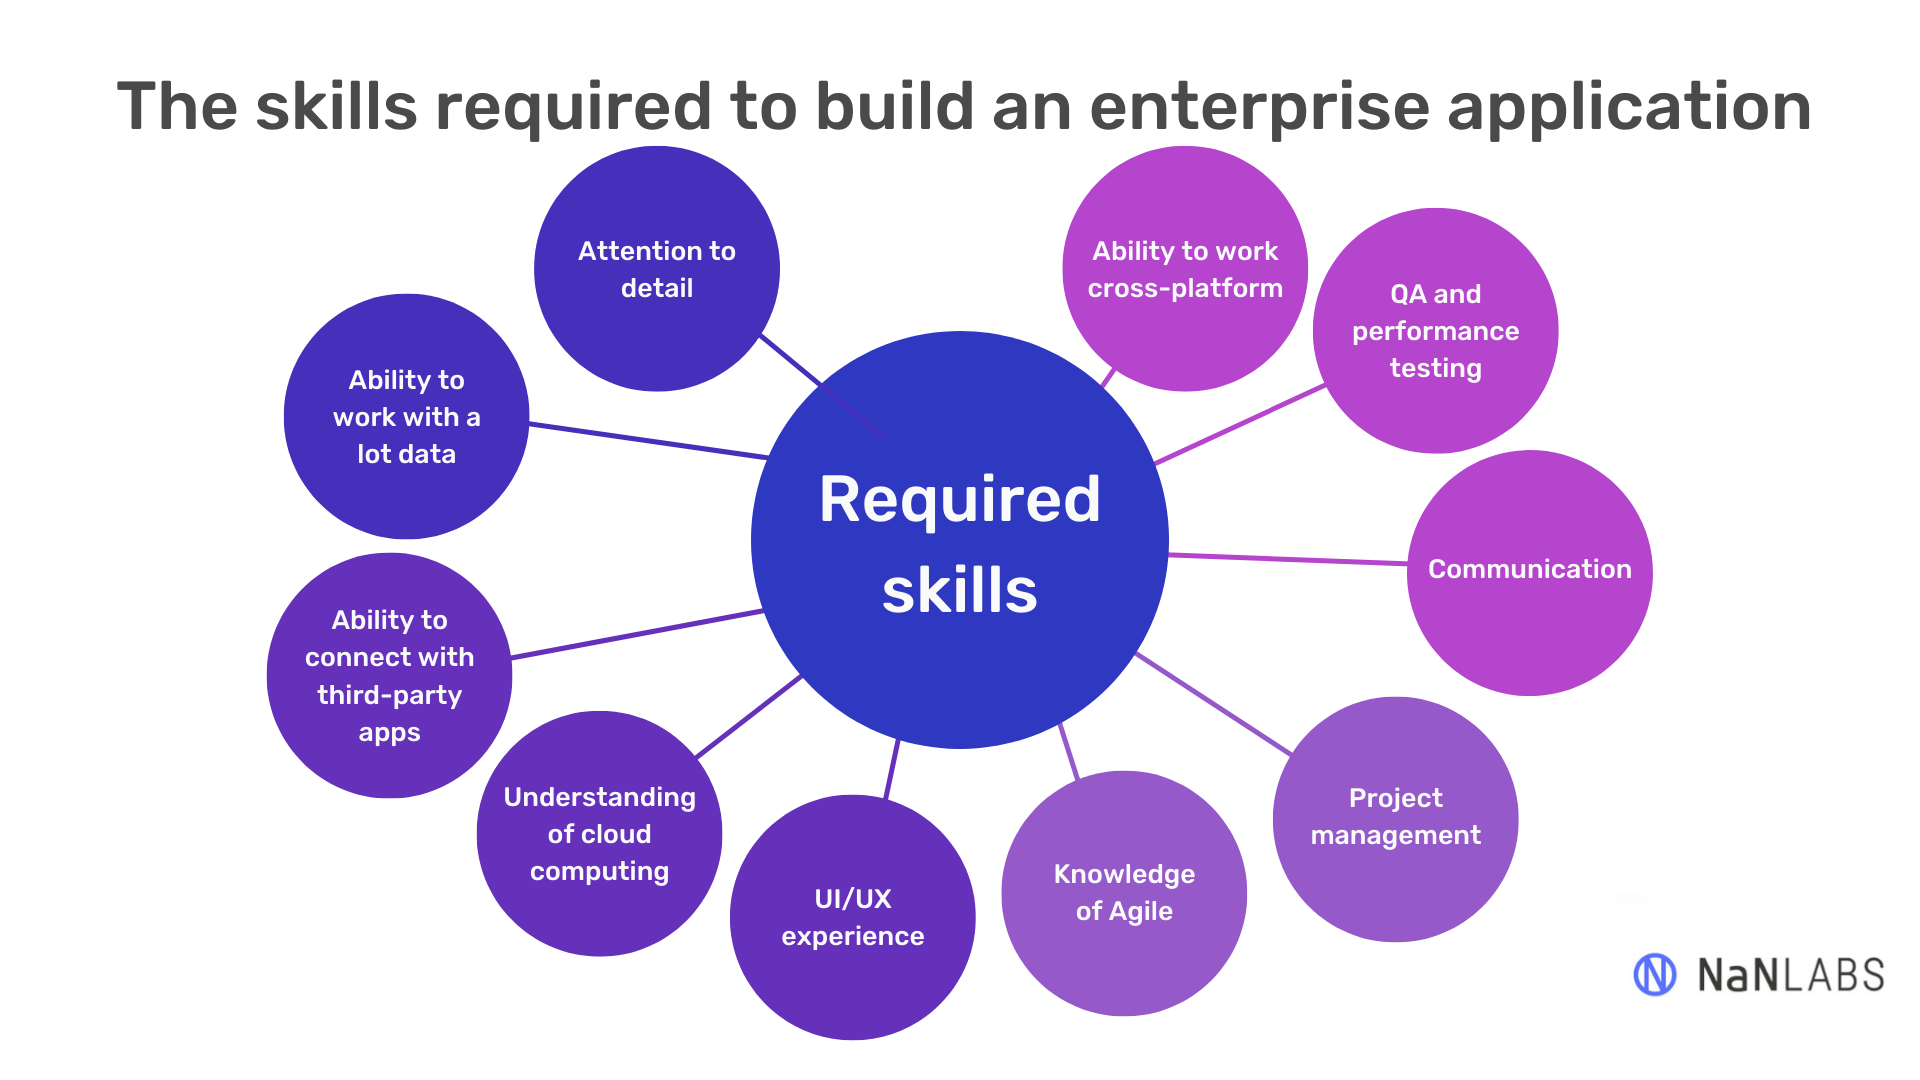 Building an enterprise application